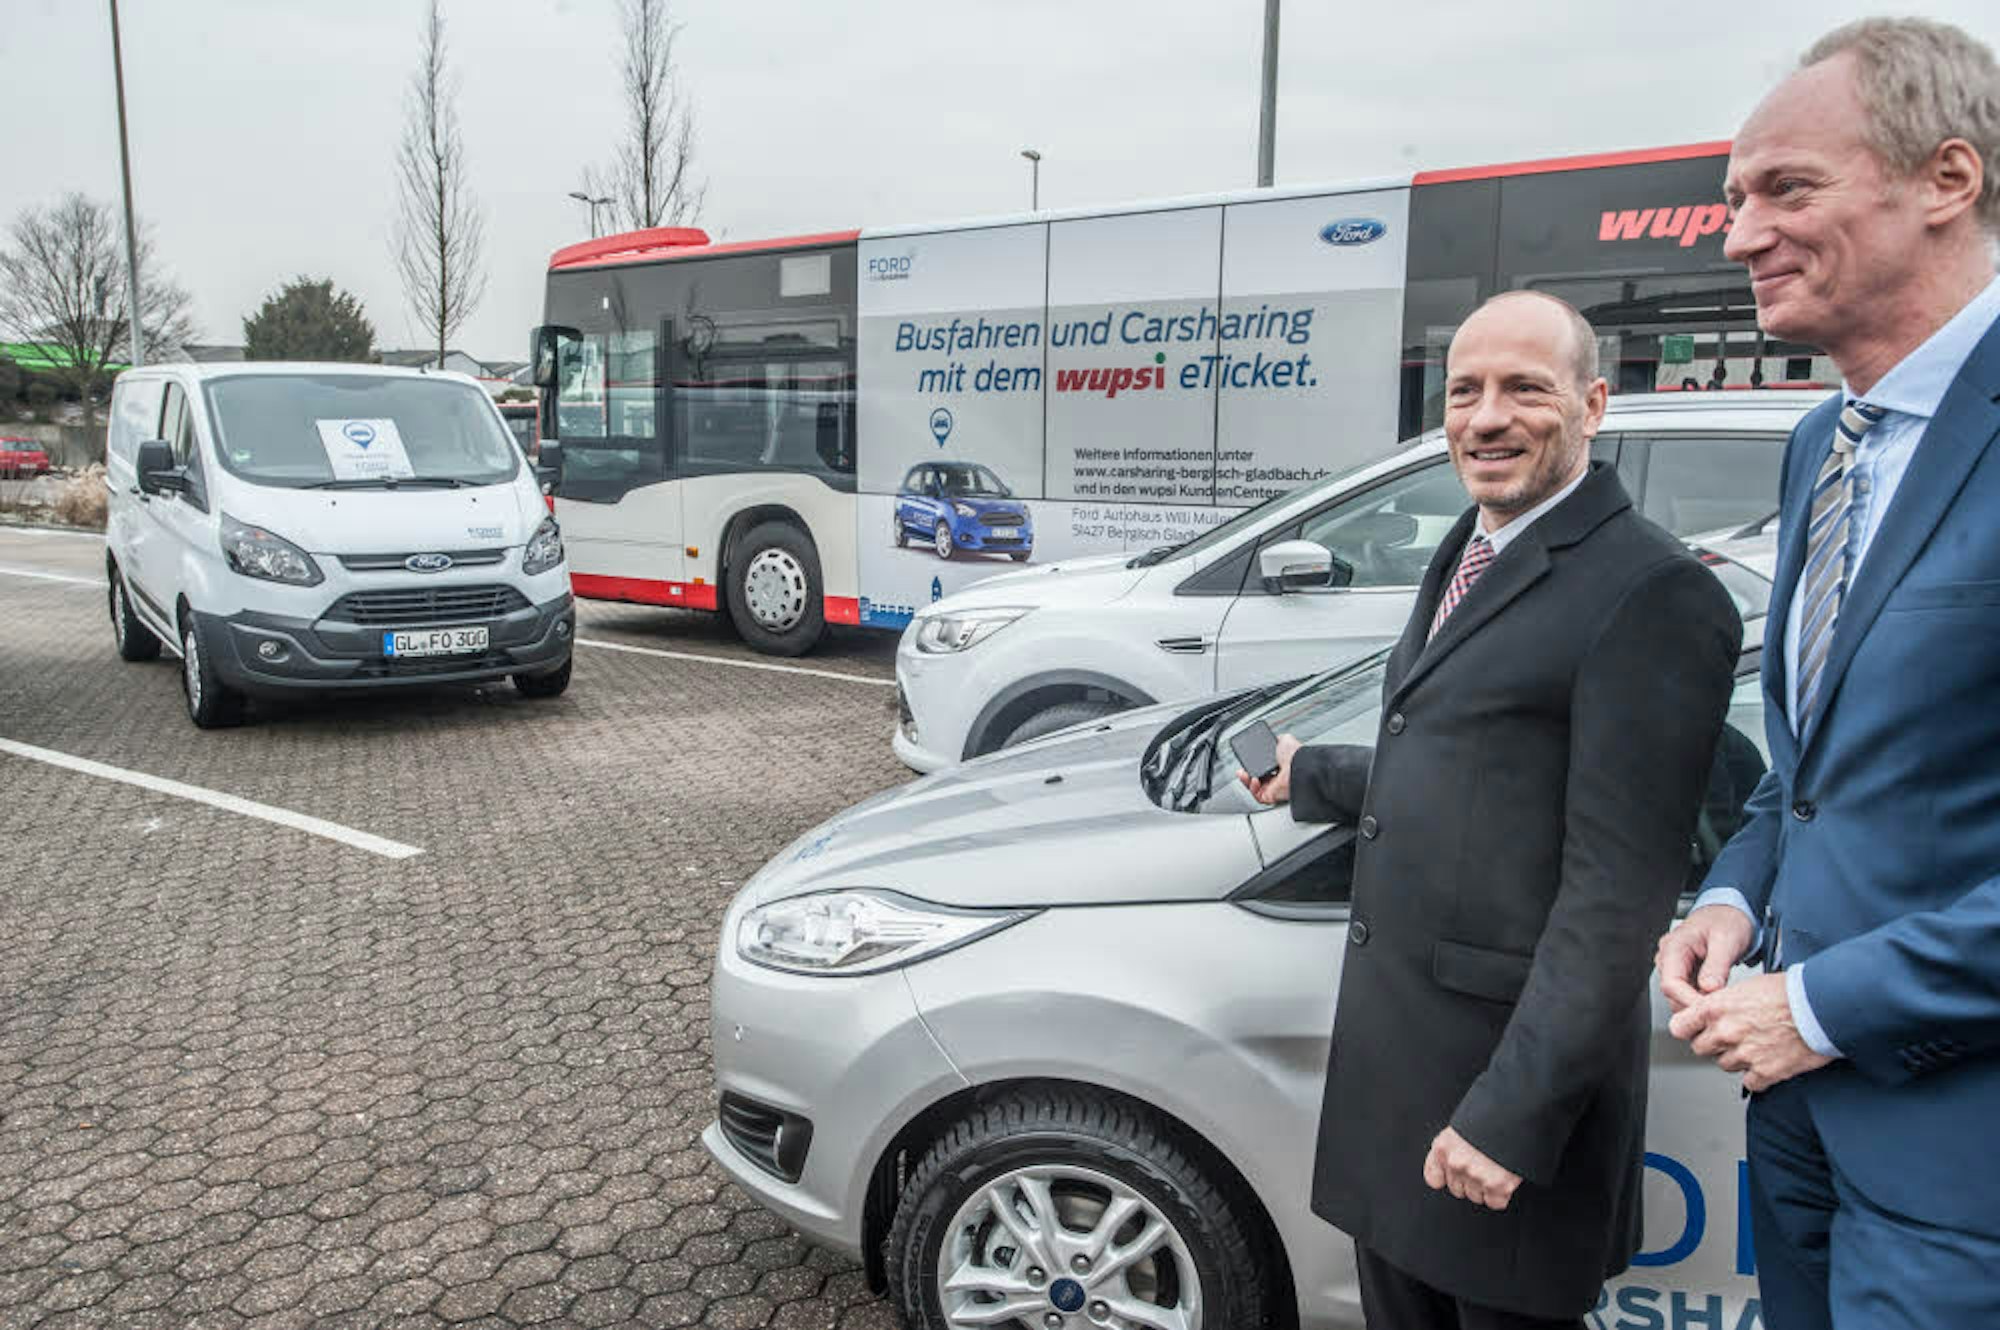 Leihfahrräder (l.) bietet die Wupsi in Leverkusen an, Car-Sharing (M.) – gemeinsam mit Ford – auch in bereits in Gladbach. In Zukunft könnte es auch autonom fahrende Busse (r.) geben, die per App etwa für den Weg zum Bahnhof geordert werden können.